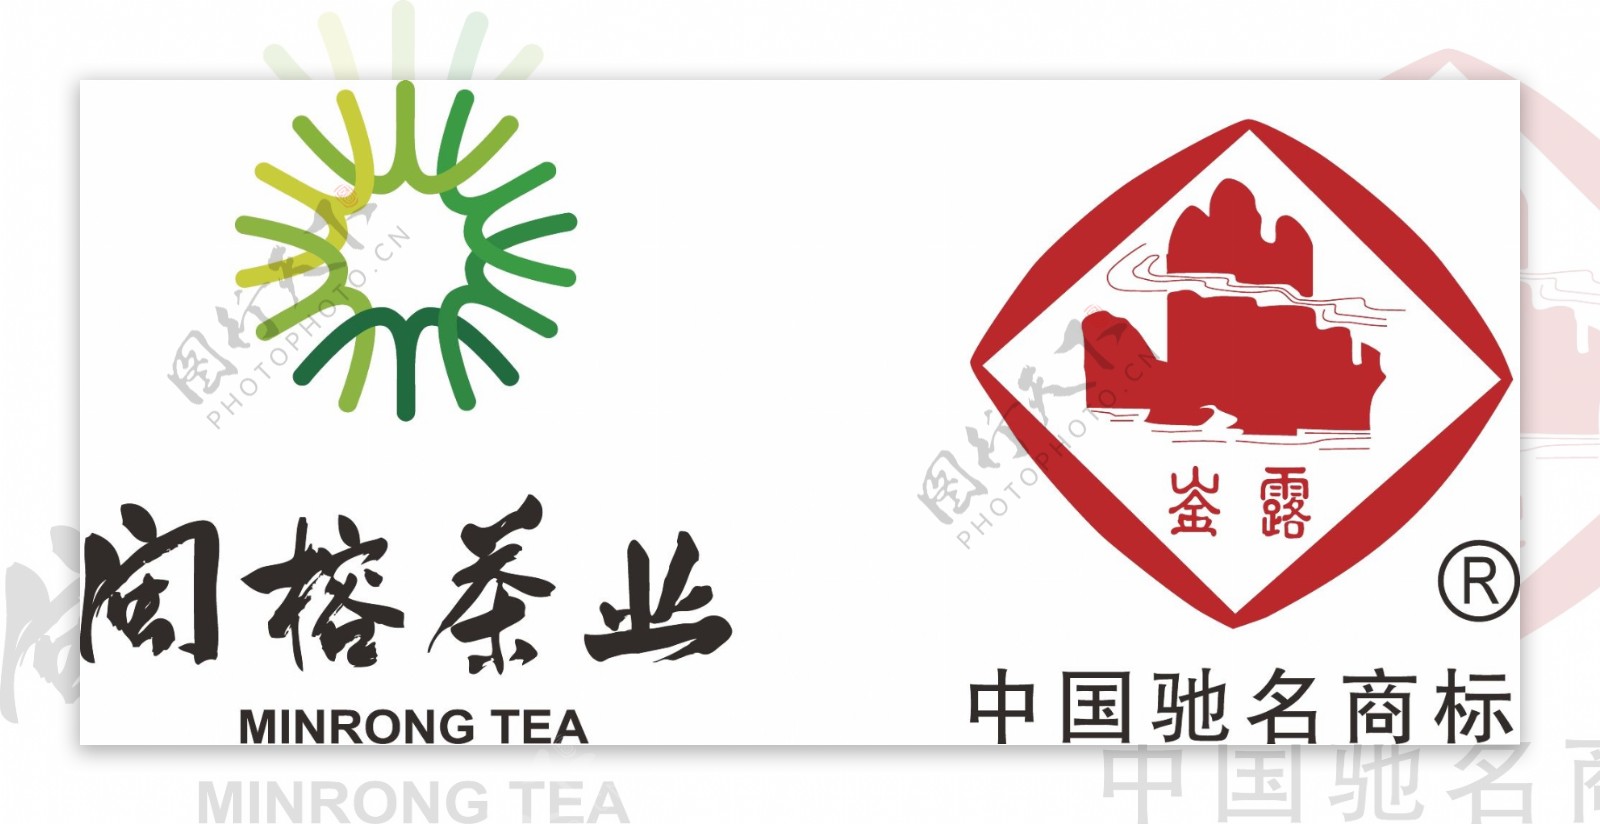 闽榕茶业logo图片